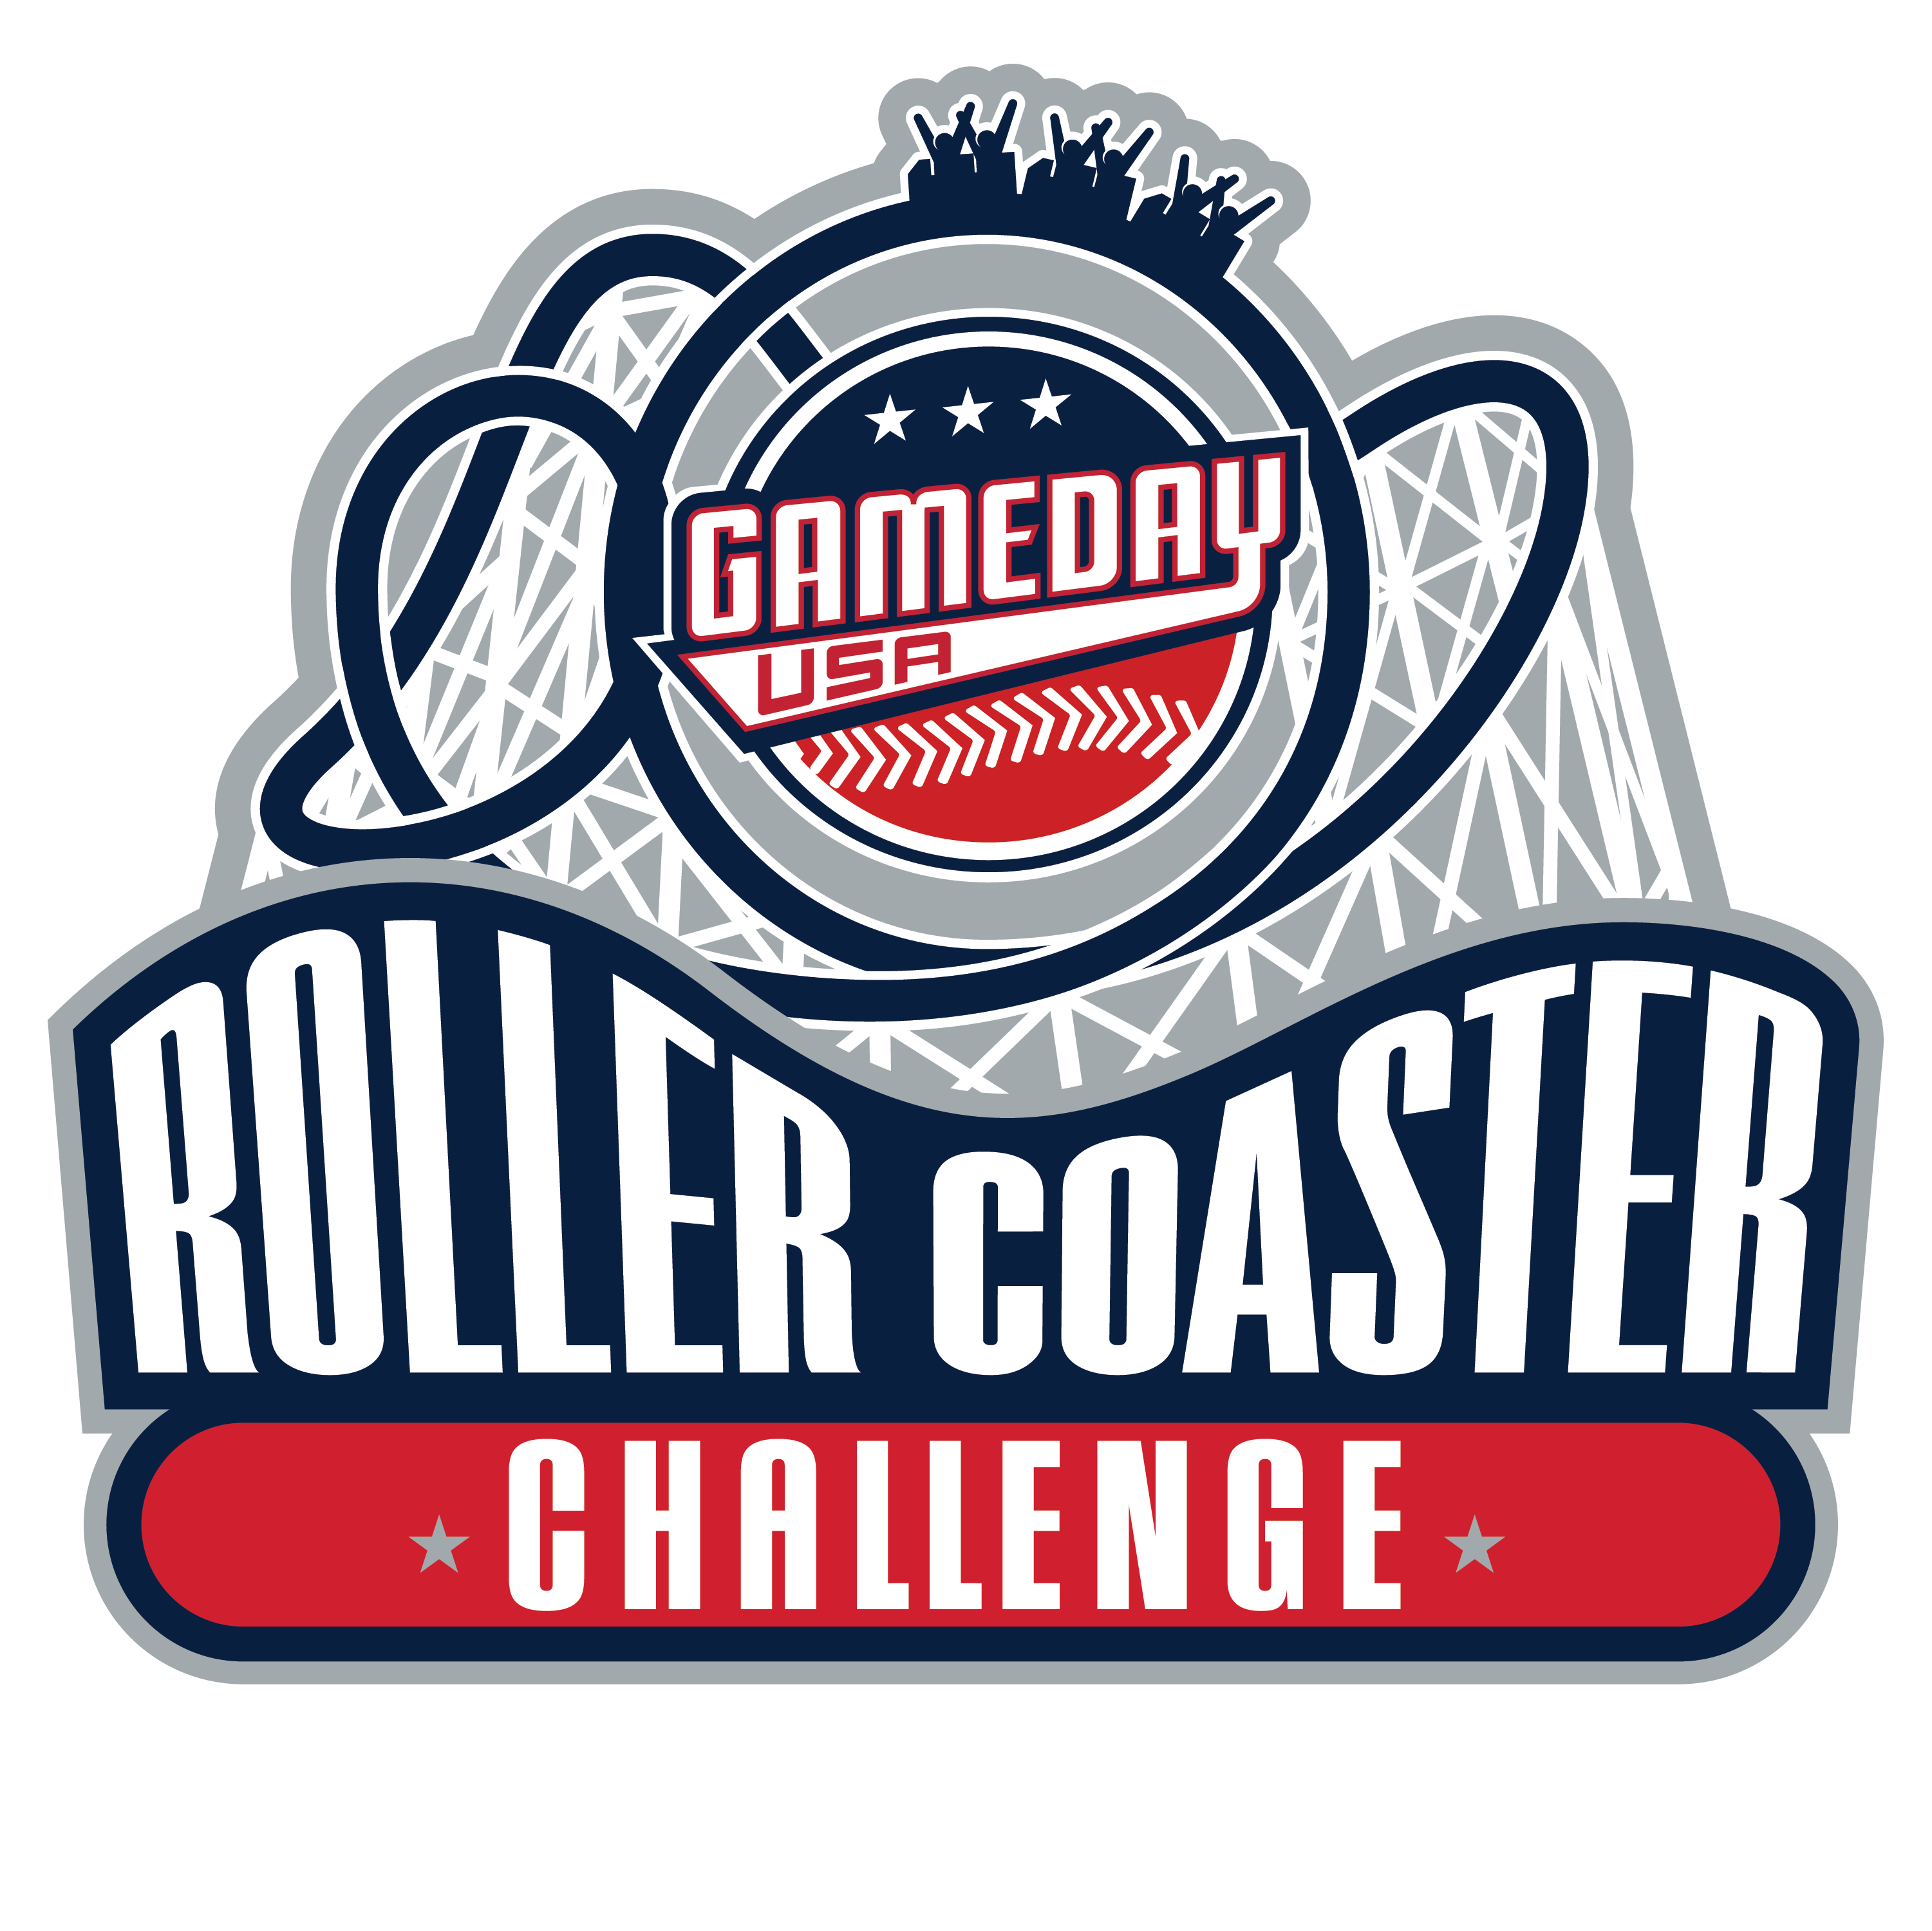 ROLLER COASTER CHALLENGE - WARREN COUNTY #3